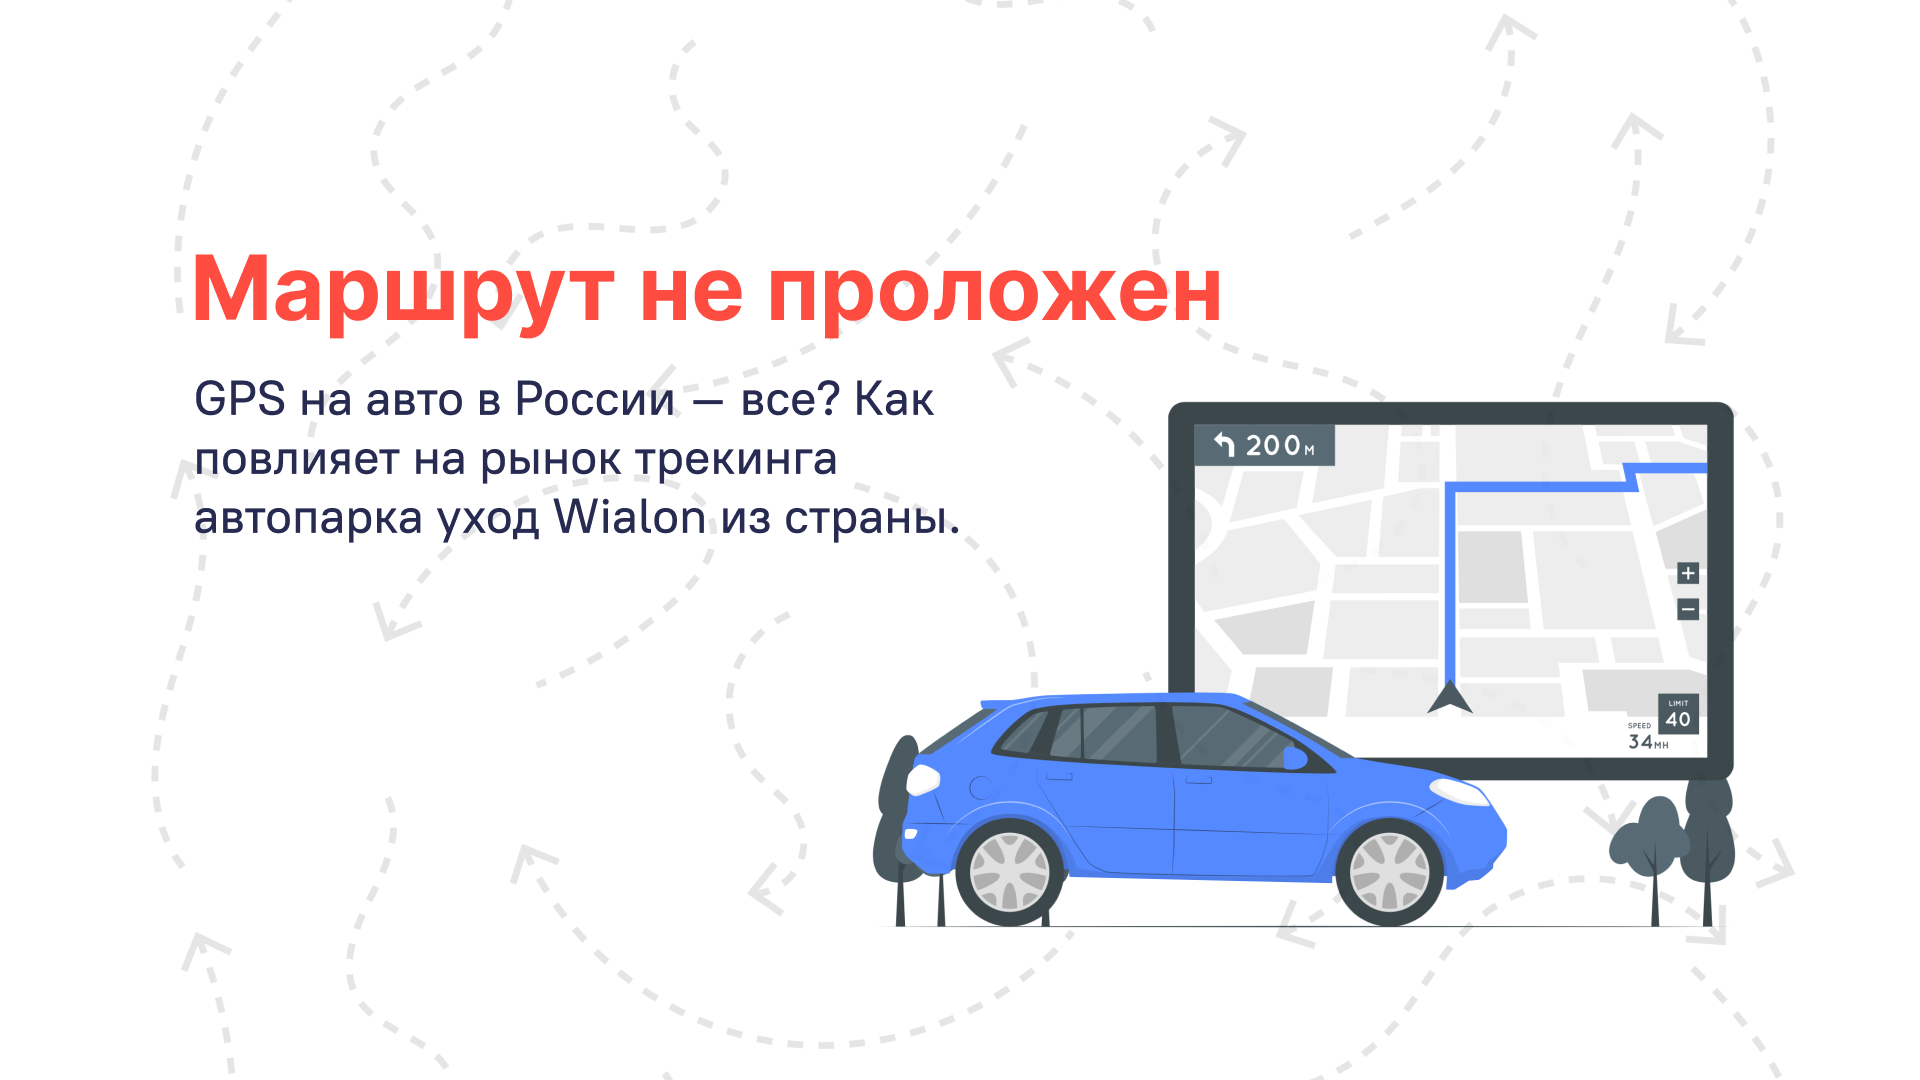 ​​GPS на автомобилях России – Все? Wialon ушел из России.